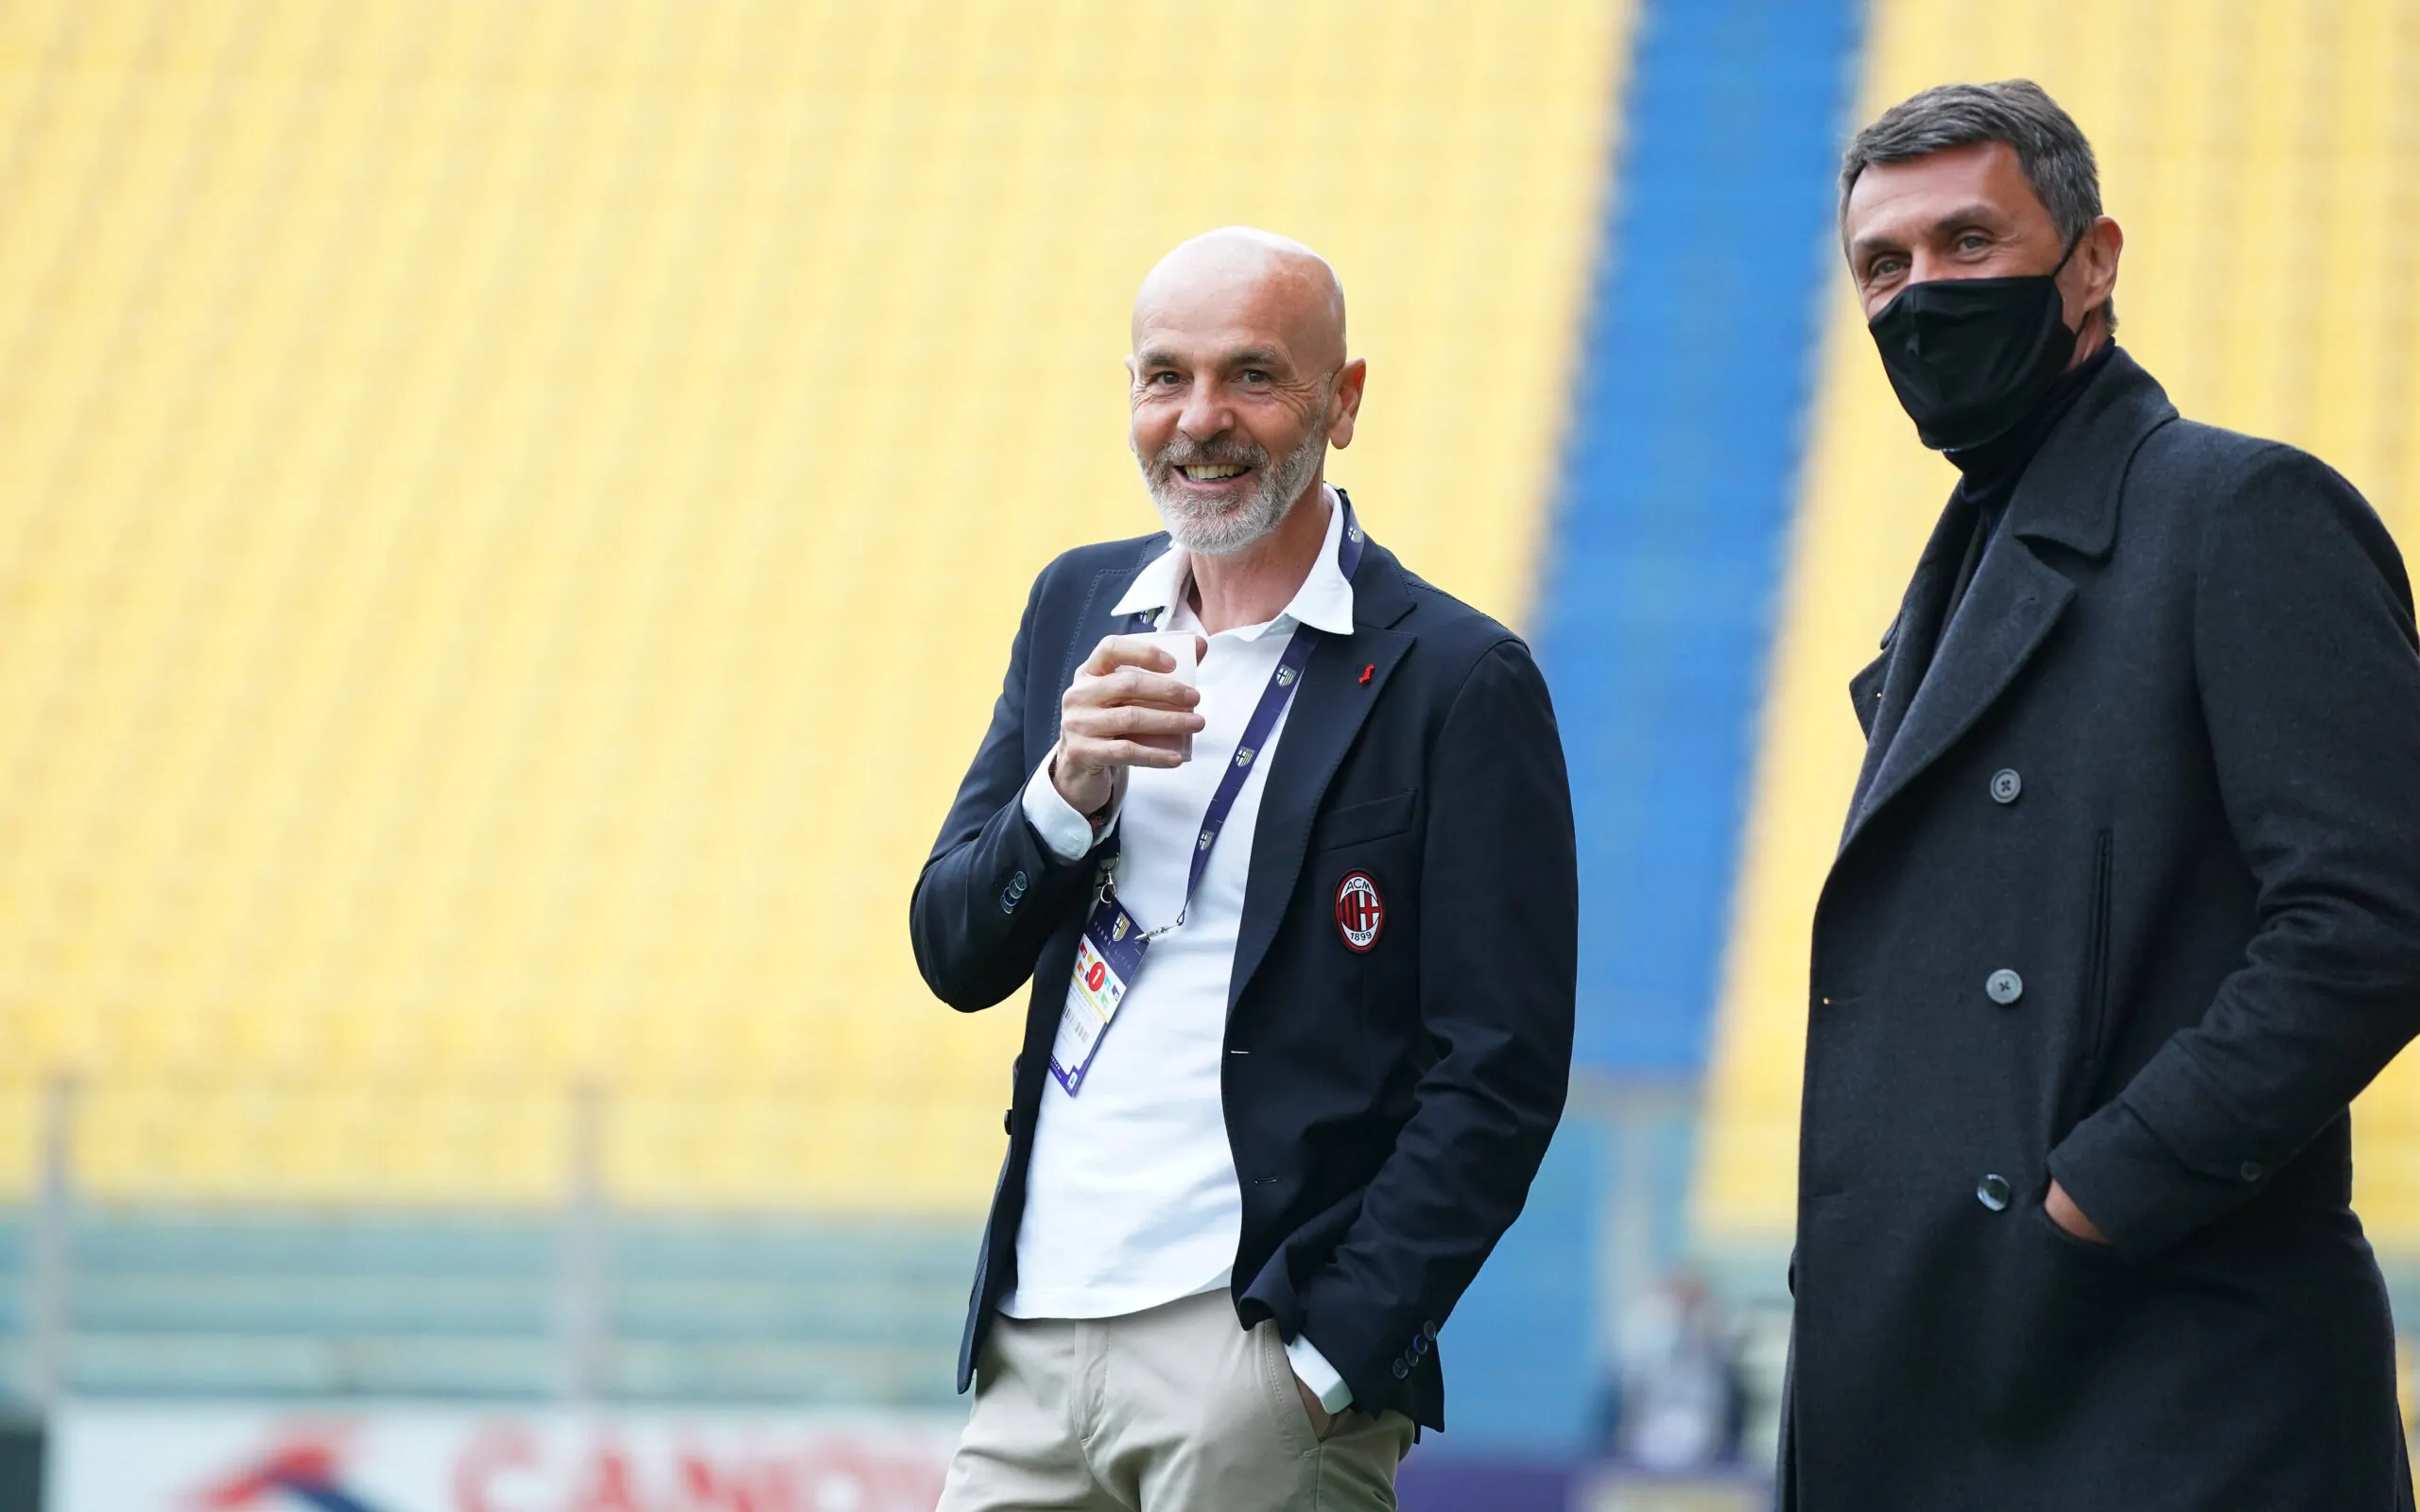 Calciomercato Milan, nuovo innesto in attacco: c’è il sì del giocatore